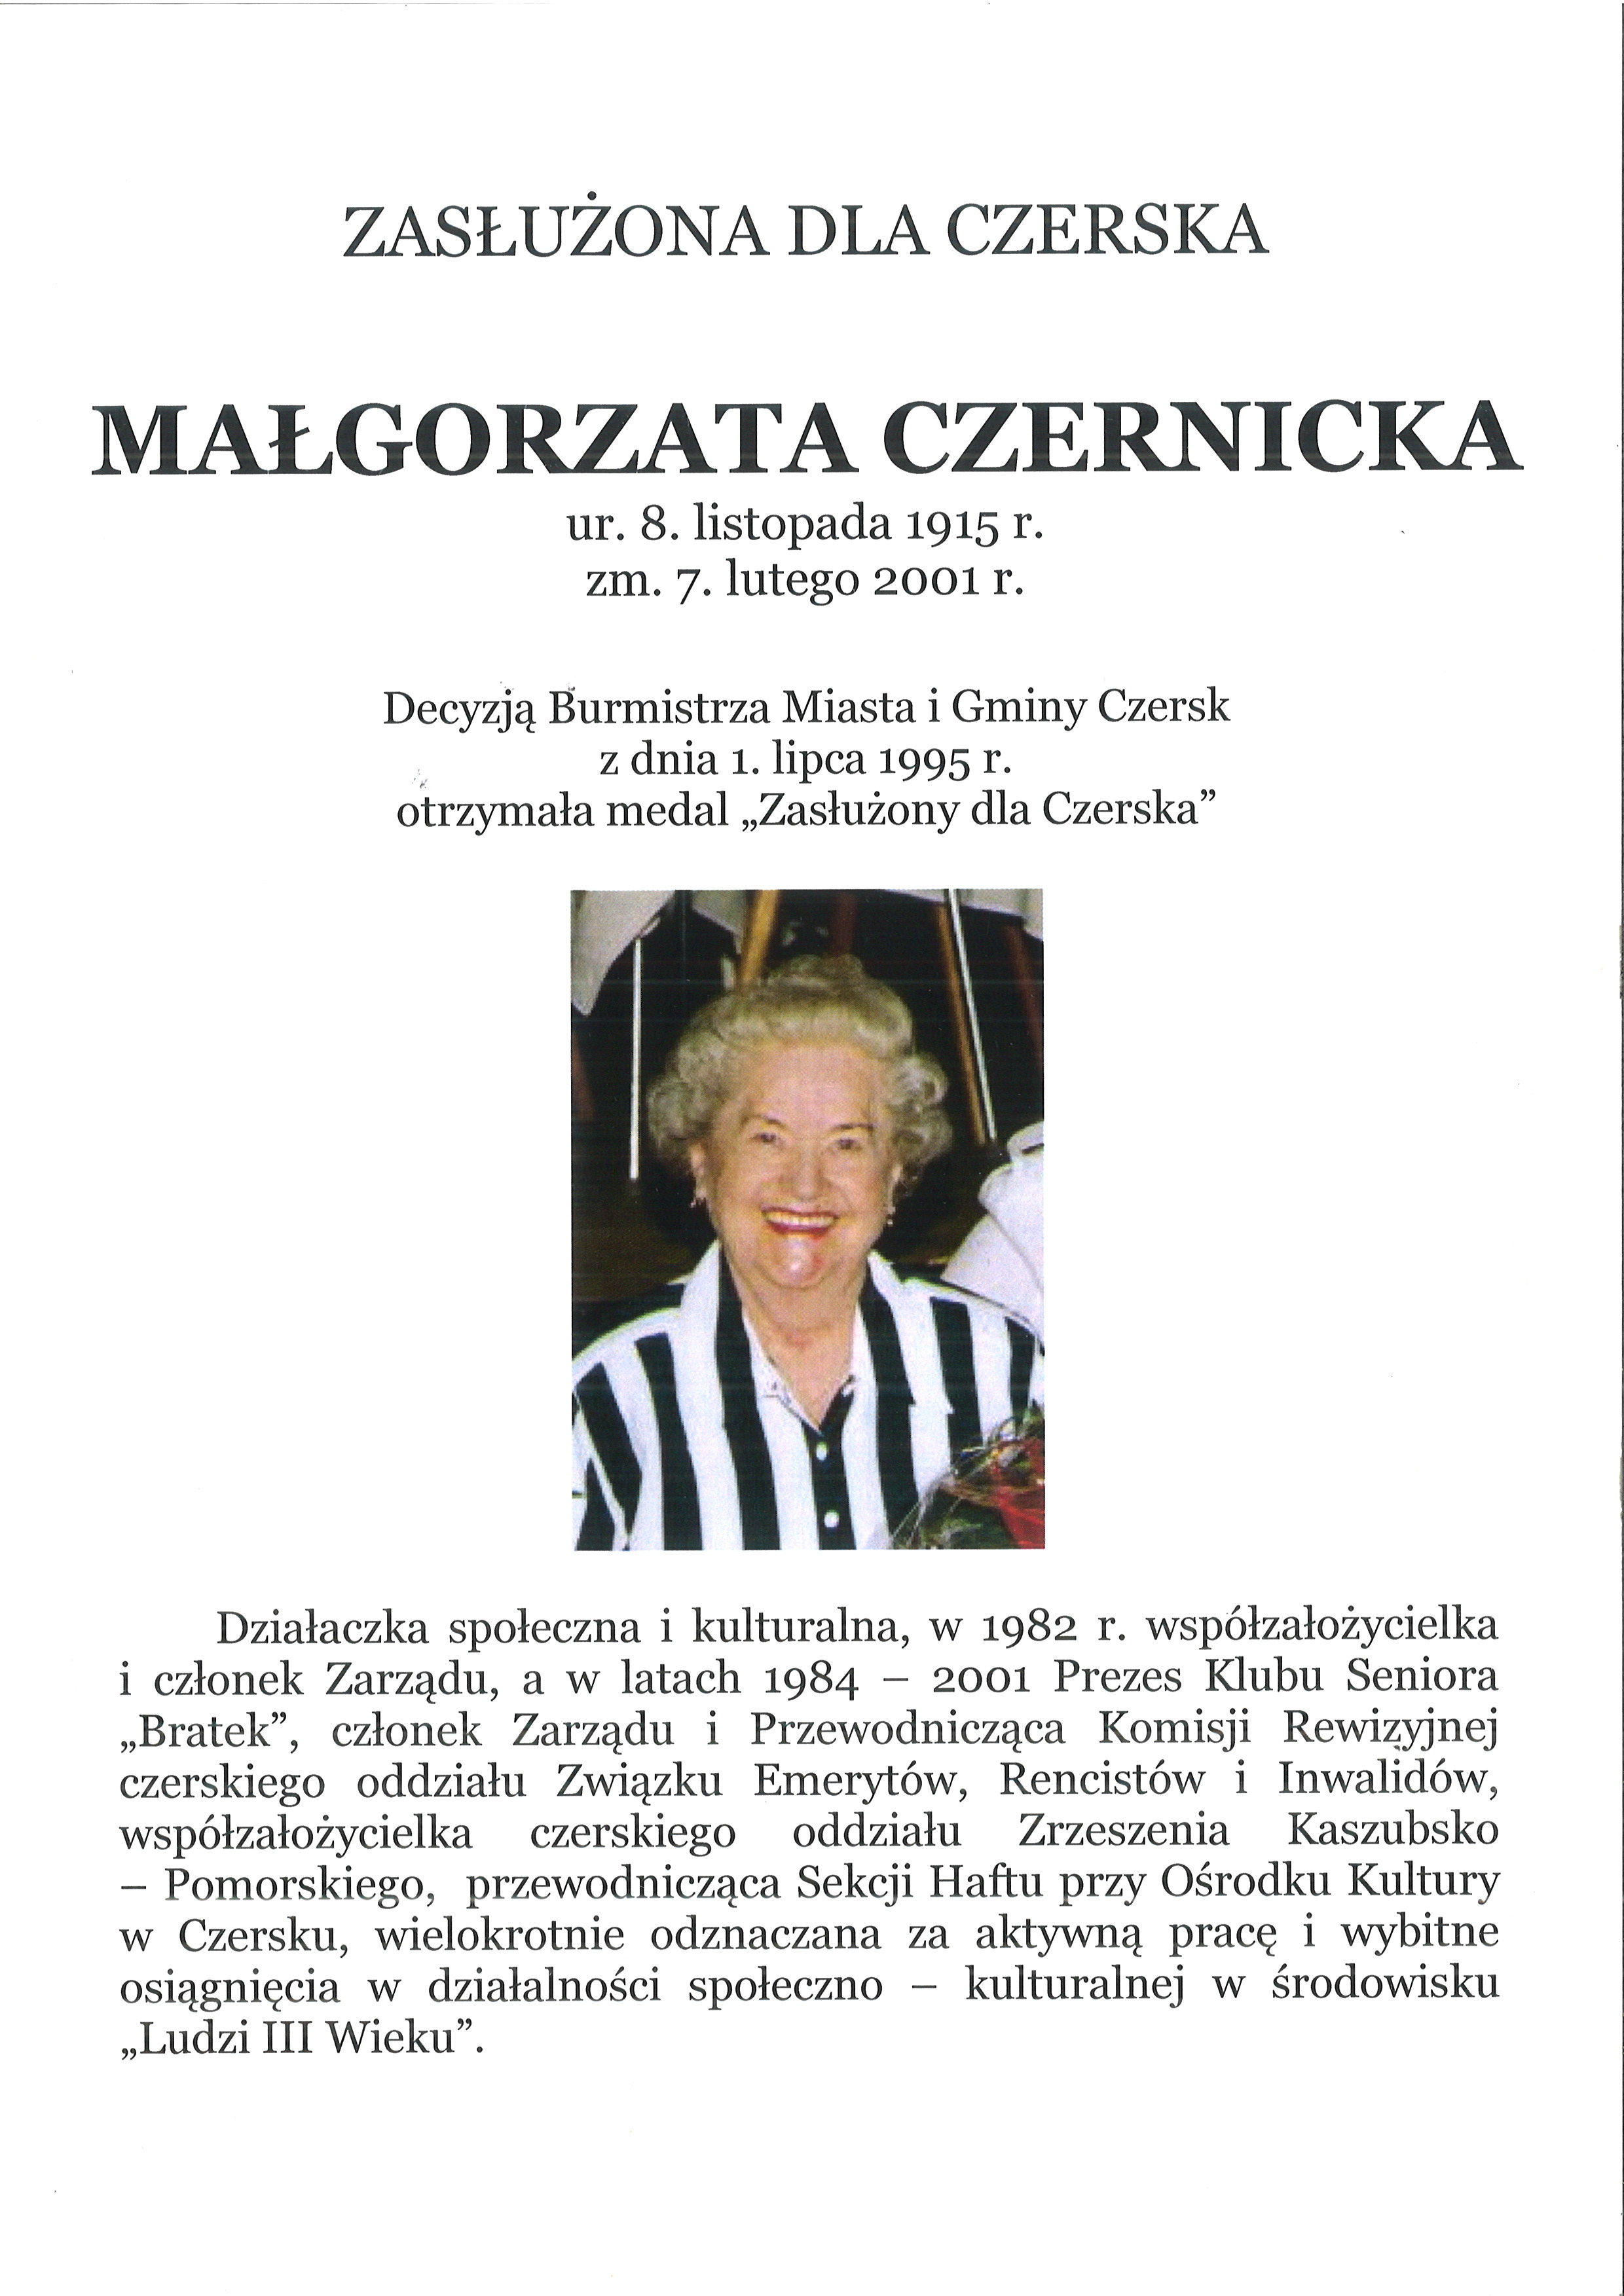 Małgorzata Czernicka